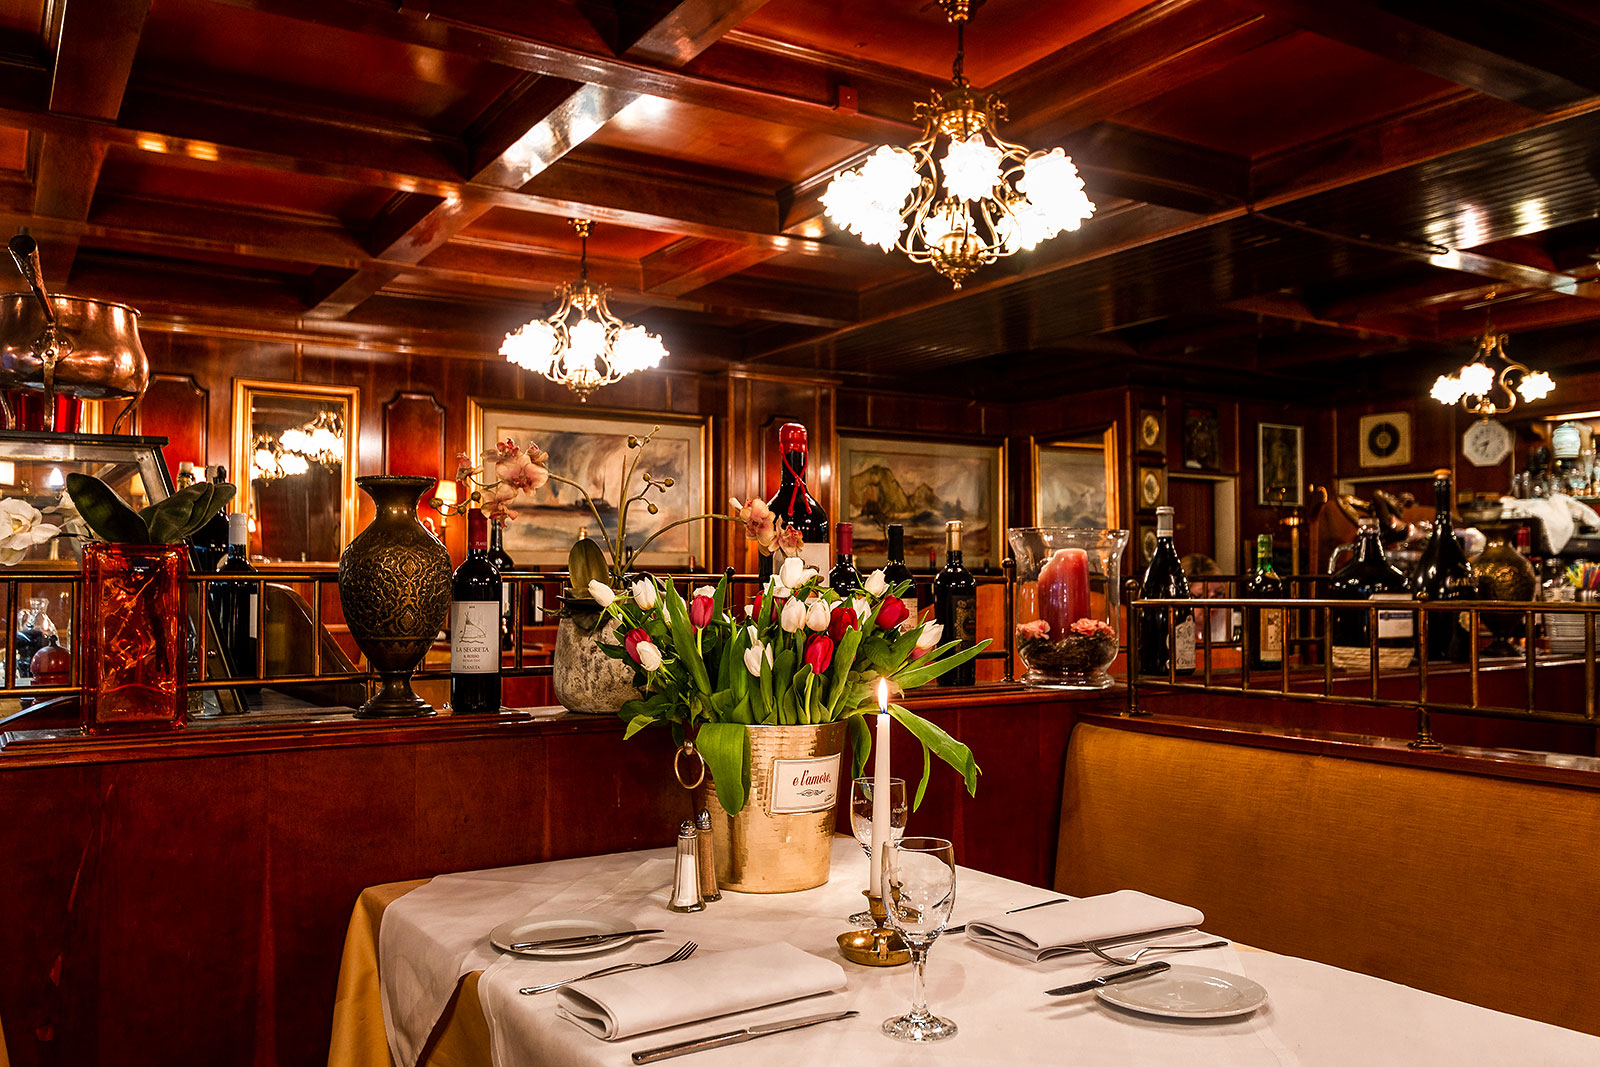 Der gemütliche Gastraum im italienischen Restaurant Costa Smeralda in Hamburg Schnelsen